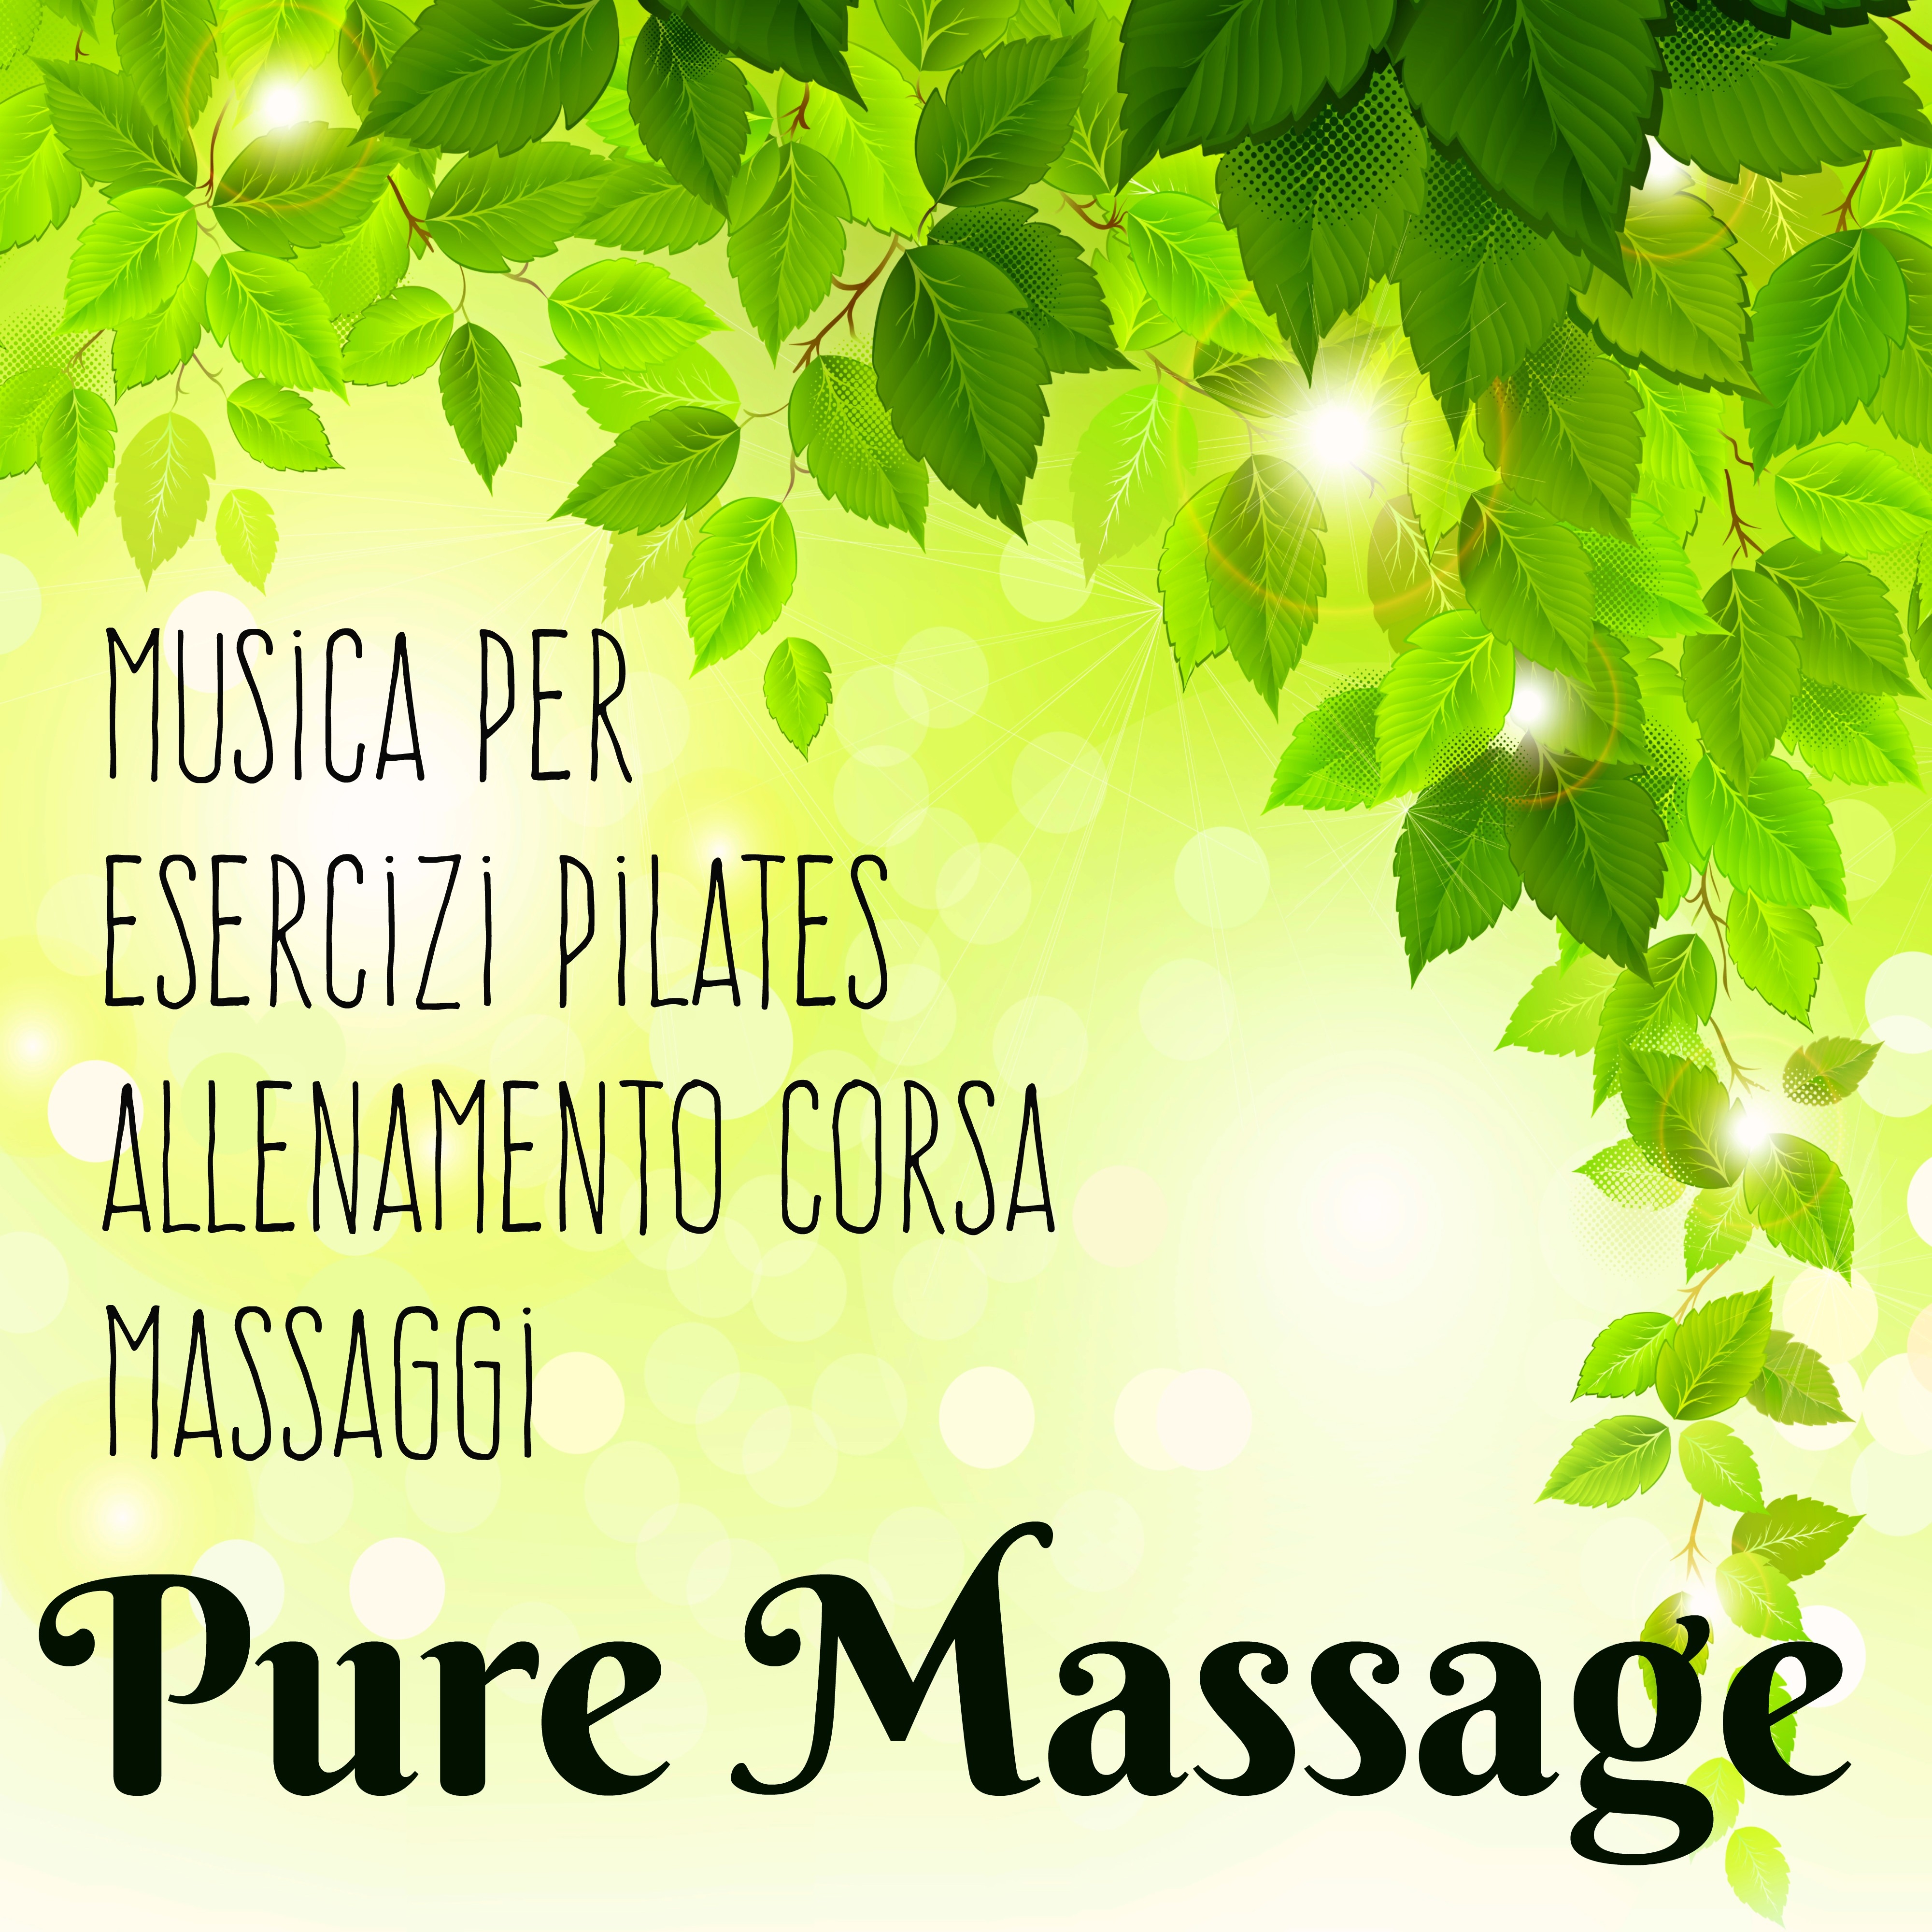 Pure Massage - Musica per Esercizi Pilates Easy Workout Allenamento Corsa e Rigenerazione del Corpo e Mente, Suoni **** Lounge Chillout